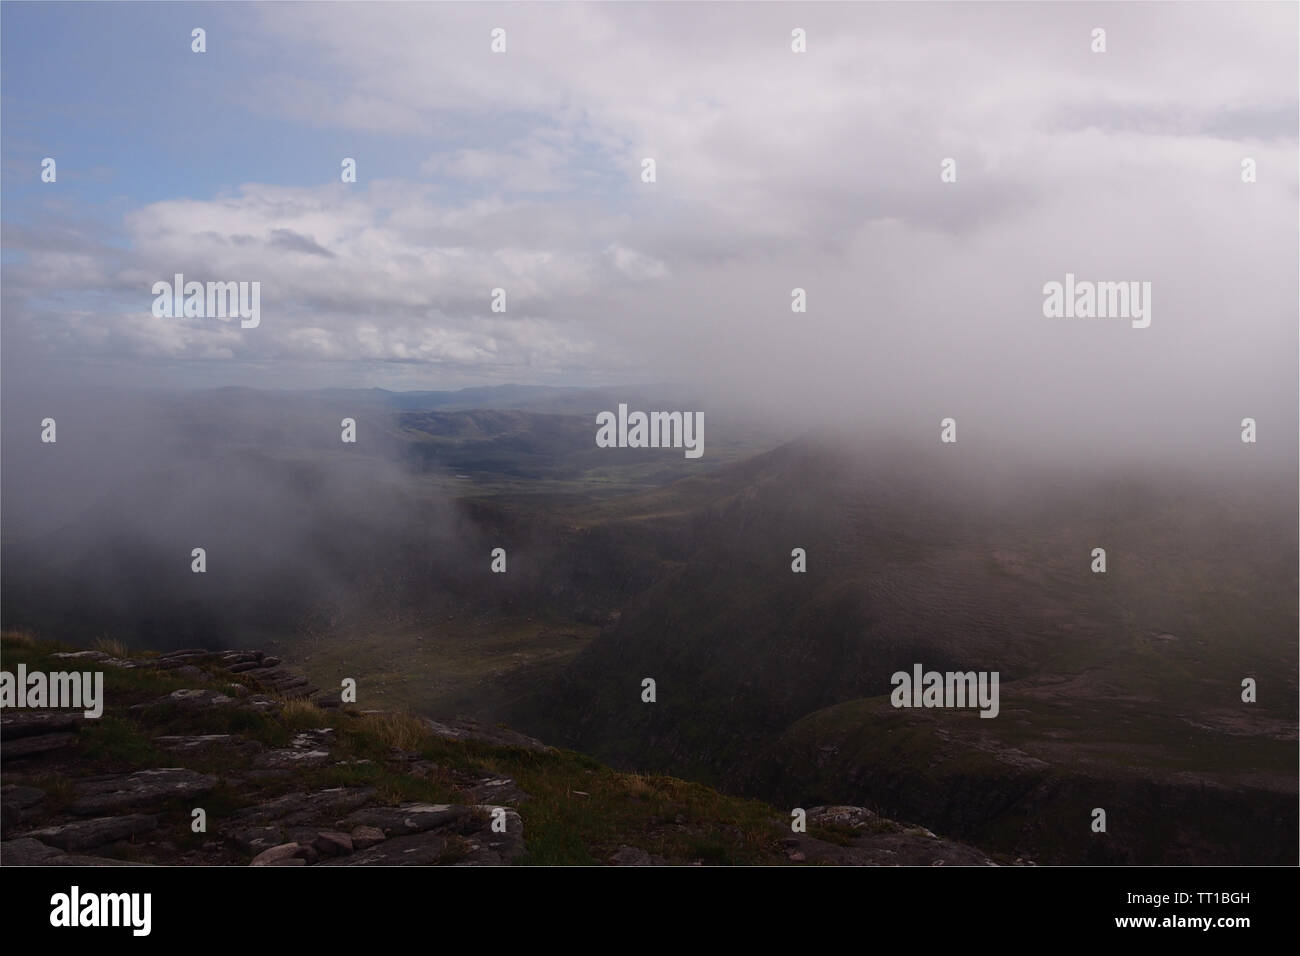 Una vista de la ladera de una montaña en la península Coigach, Escocia con pasar tenues nubes oscurecer algunas de las vistas y los parches de cielo azul Foto de stock